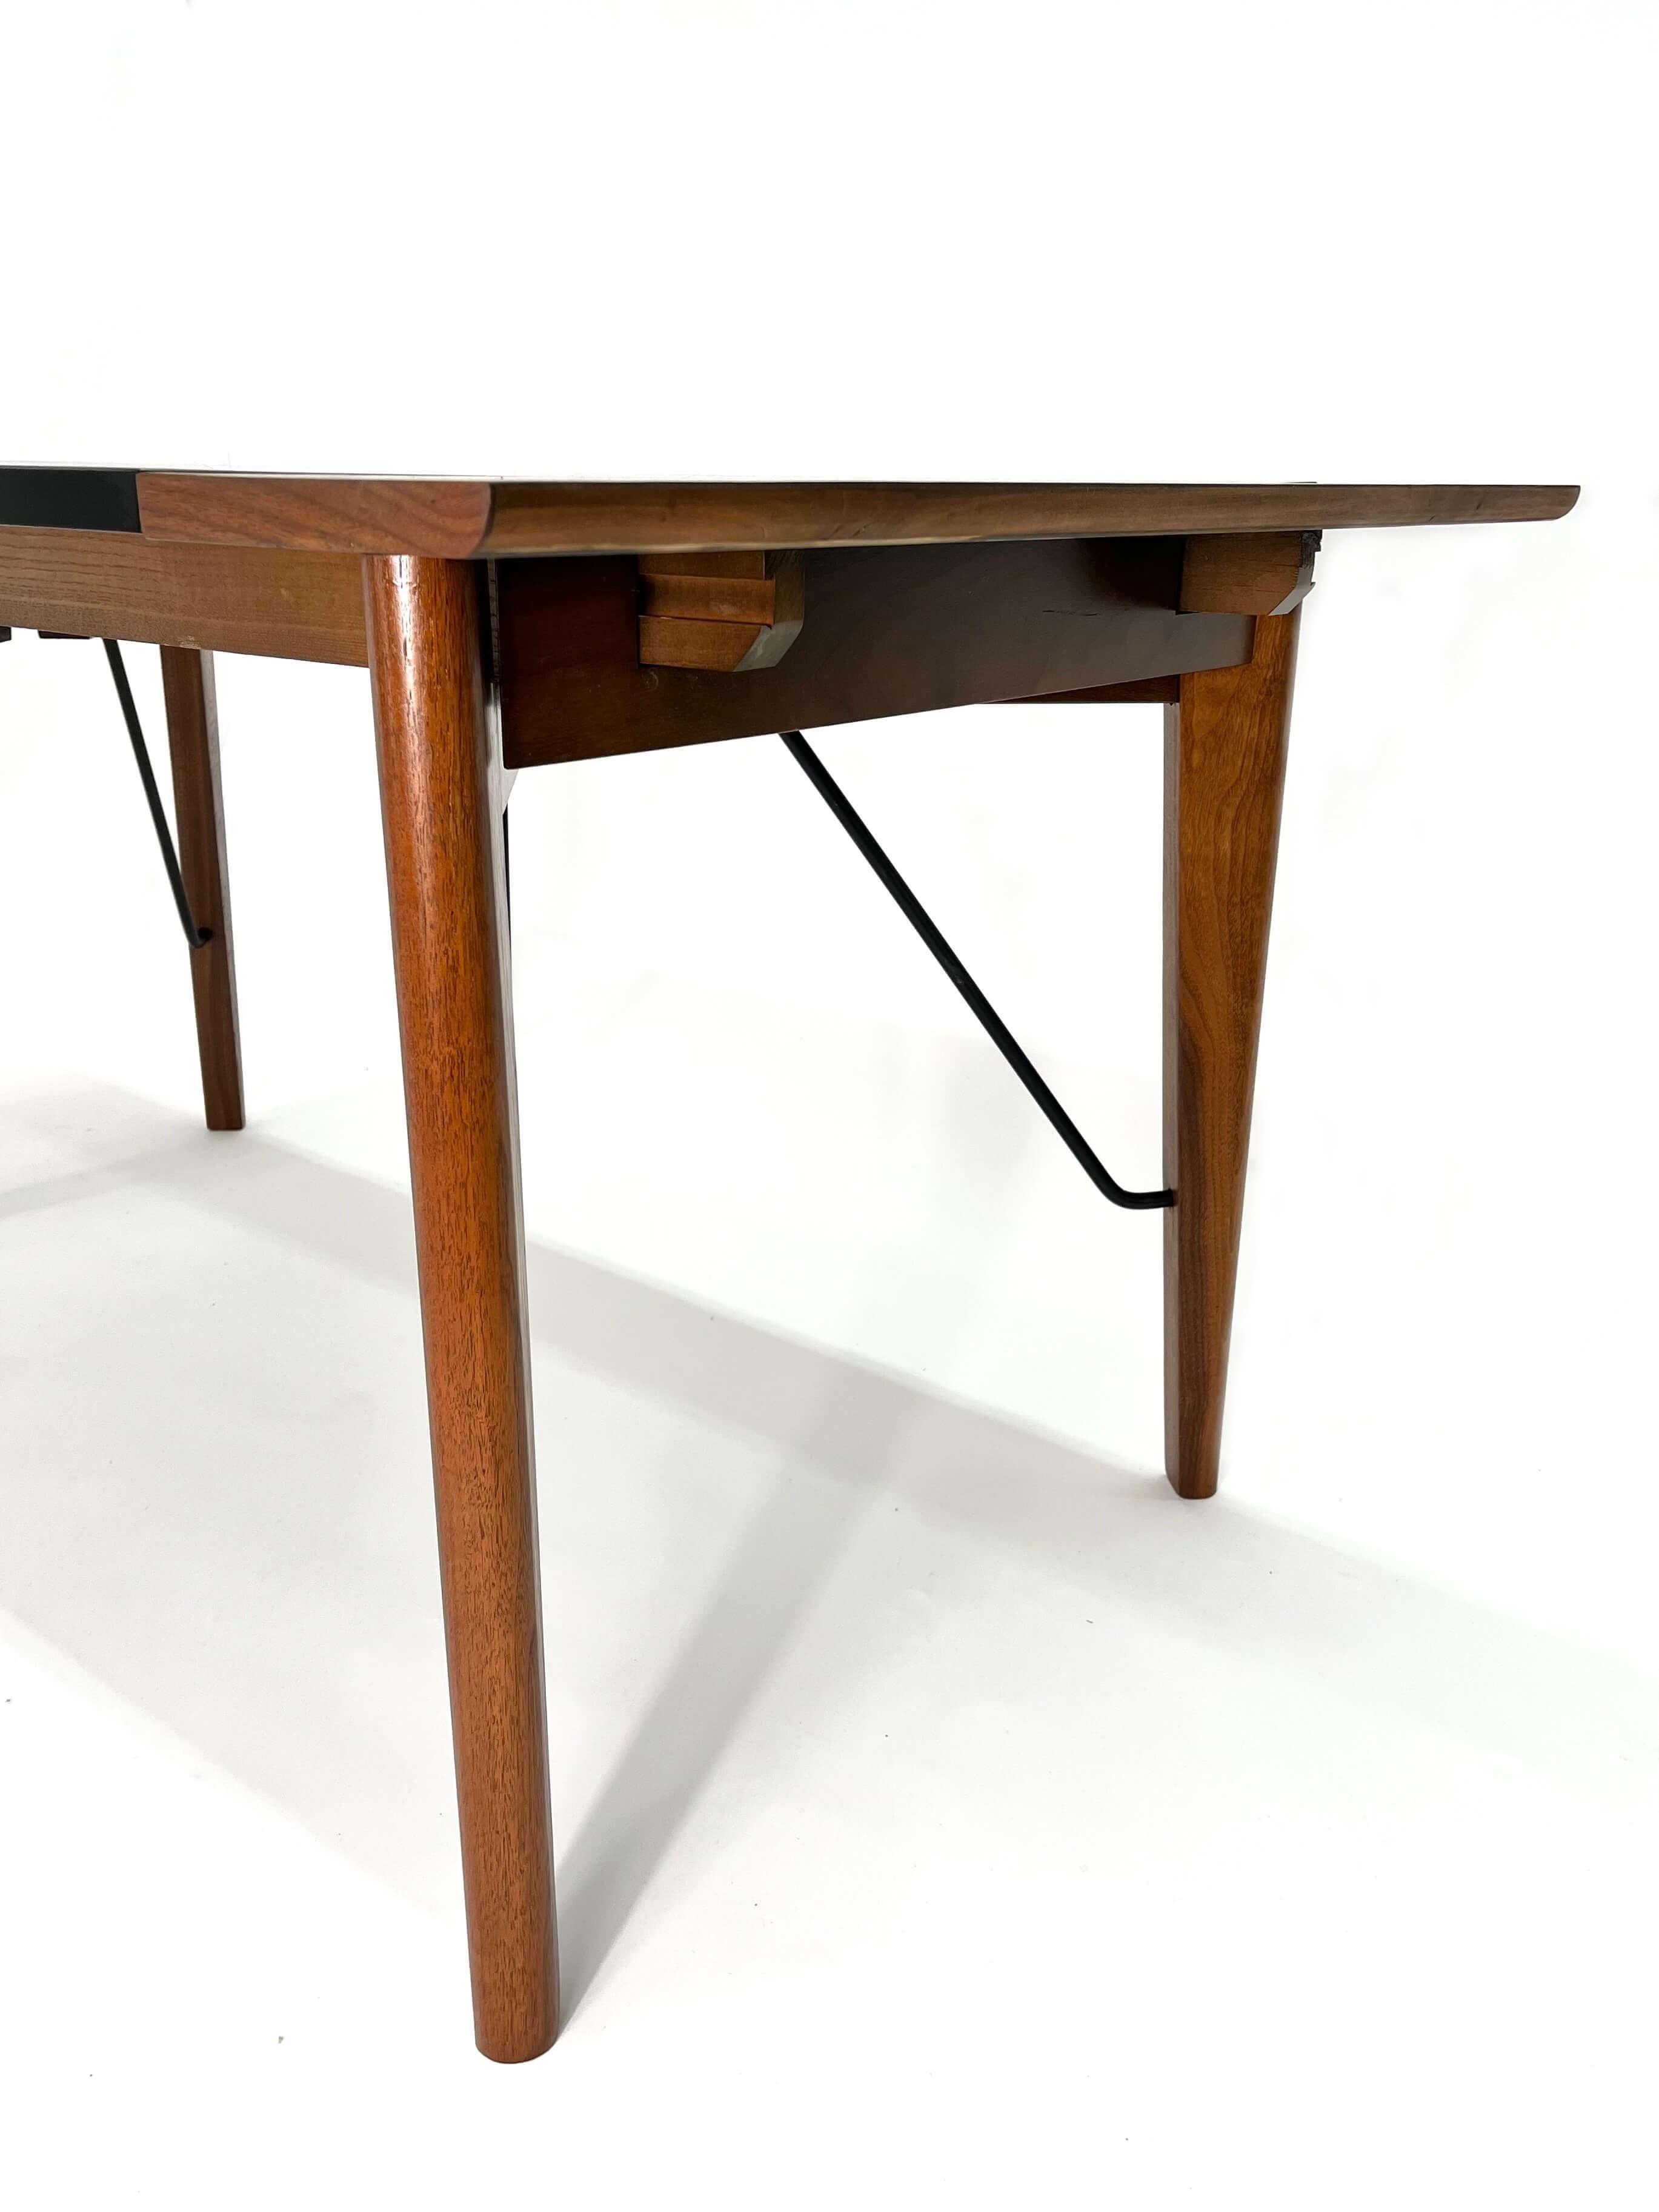 Seltener rechteckiger Esstisch von Greta M. Grossman für Glenn of California, circa. 1950s. Der Tisch hat ein Gestell aus massivem Walnussholz mit einer schwarzen Laminatplatte und Eisenstreben, die die Beine stützen. Der ausziehbare Tisch verfügt